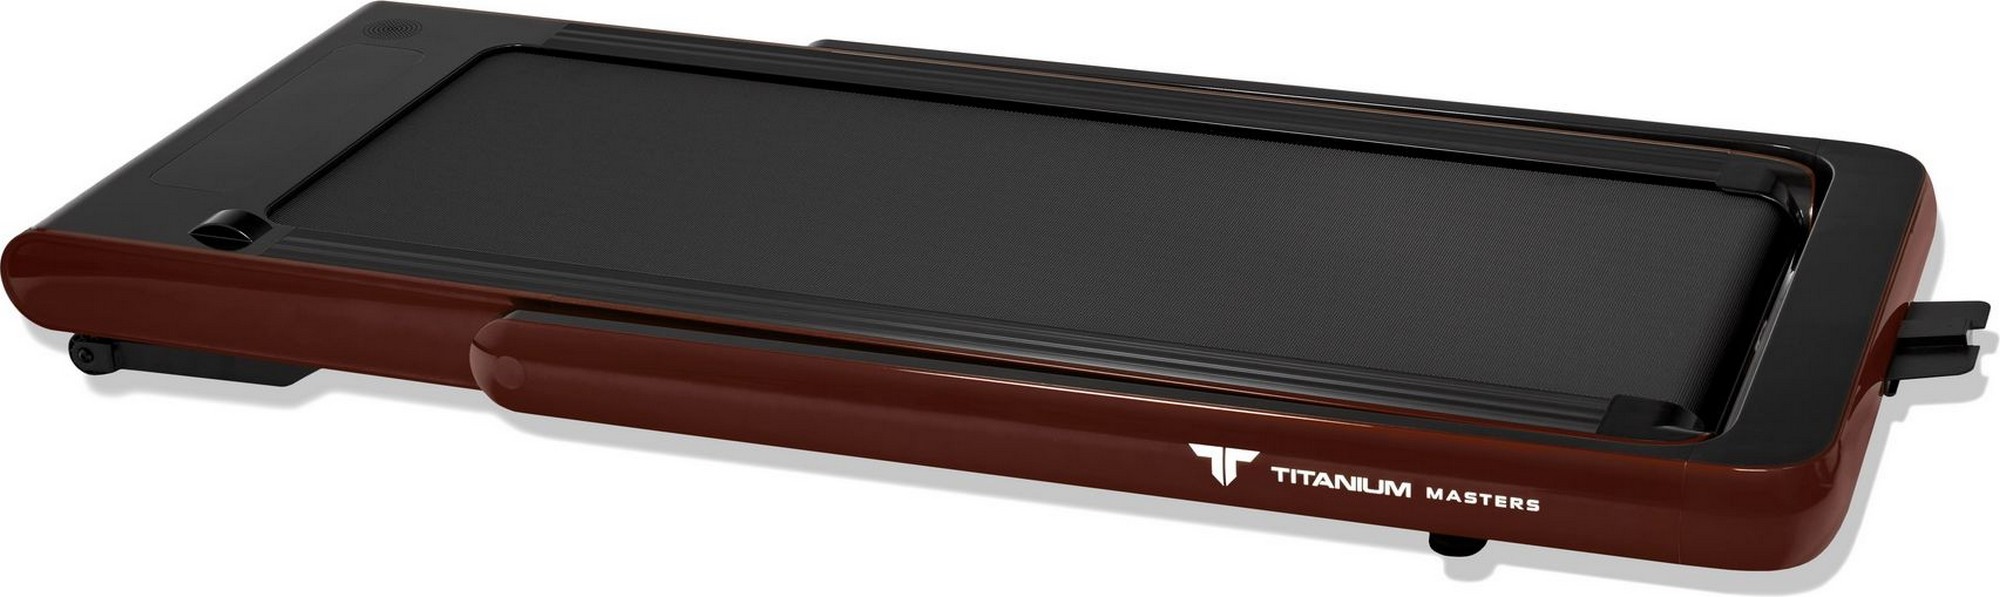 Беговая дорожка Titanium Masters Slimtech S60 коричневый 2000_597